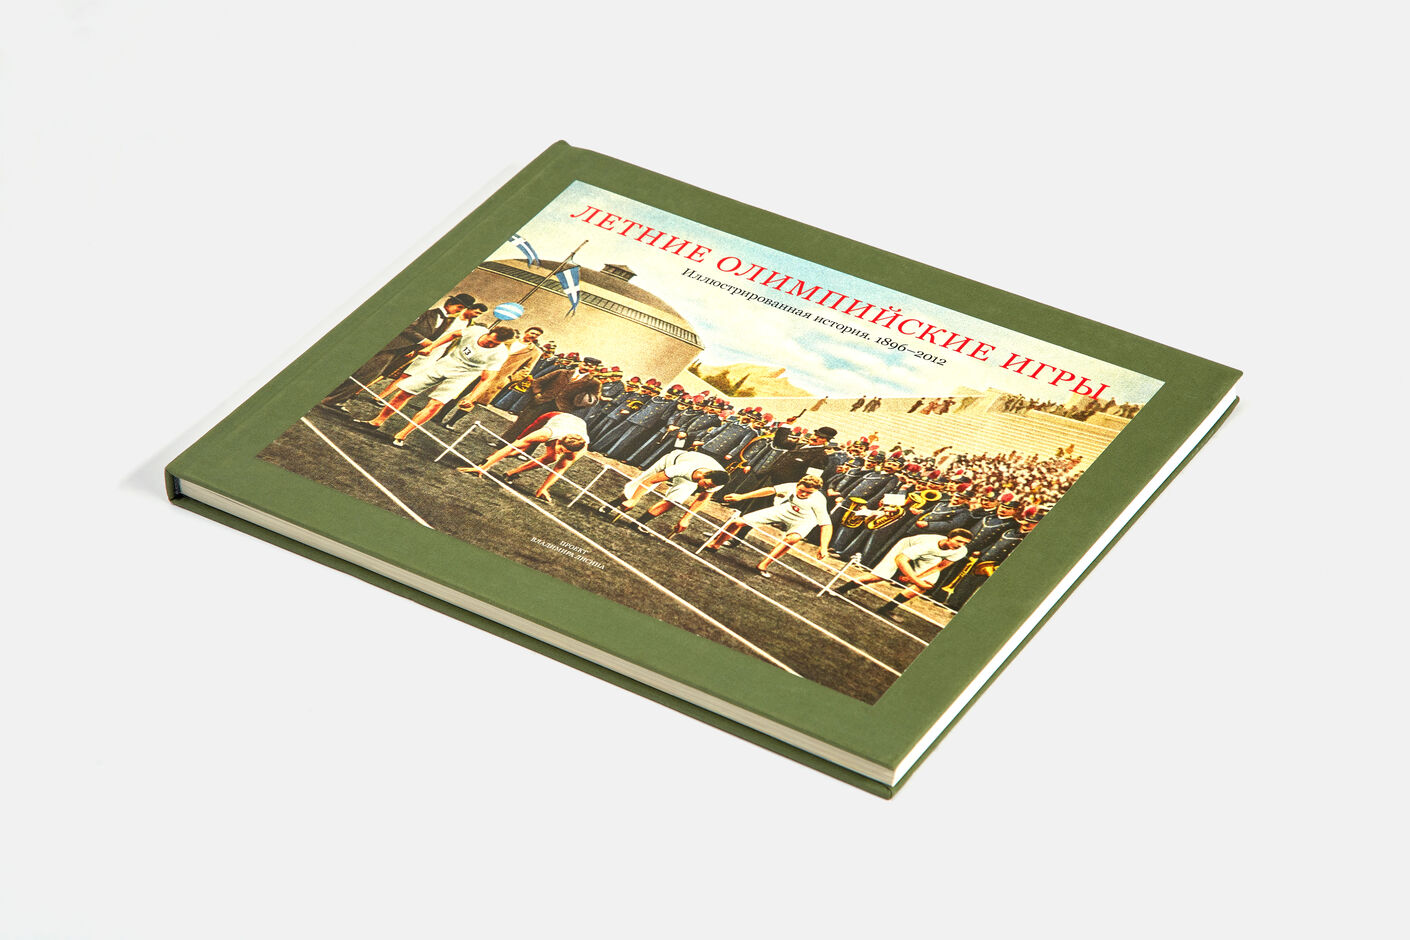 Подарочная книга Летние олимпийски игры. Иллюстрированная история 1896-2012, Агей Томеш